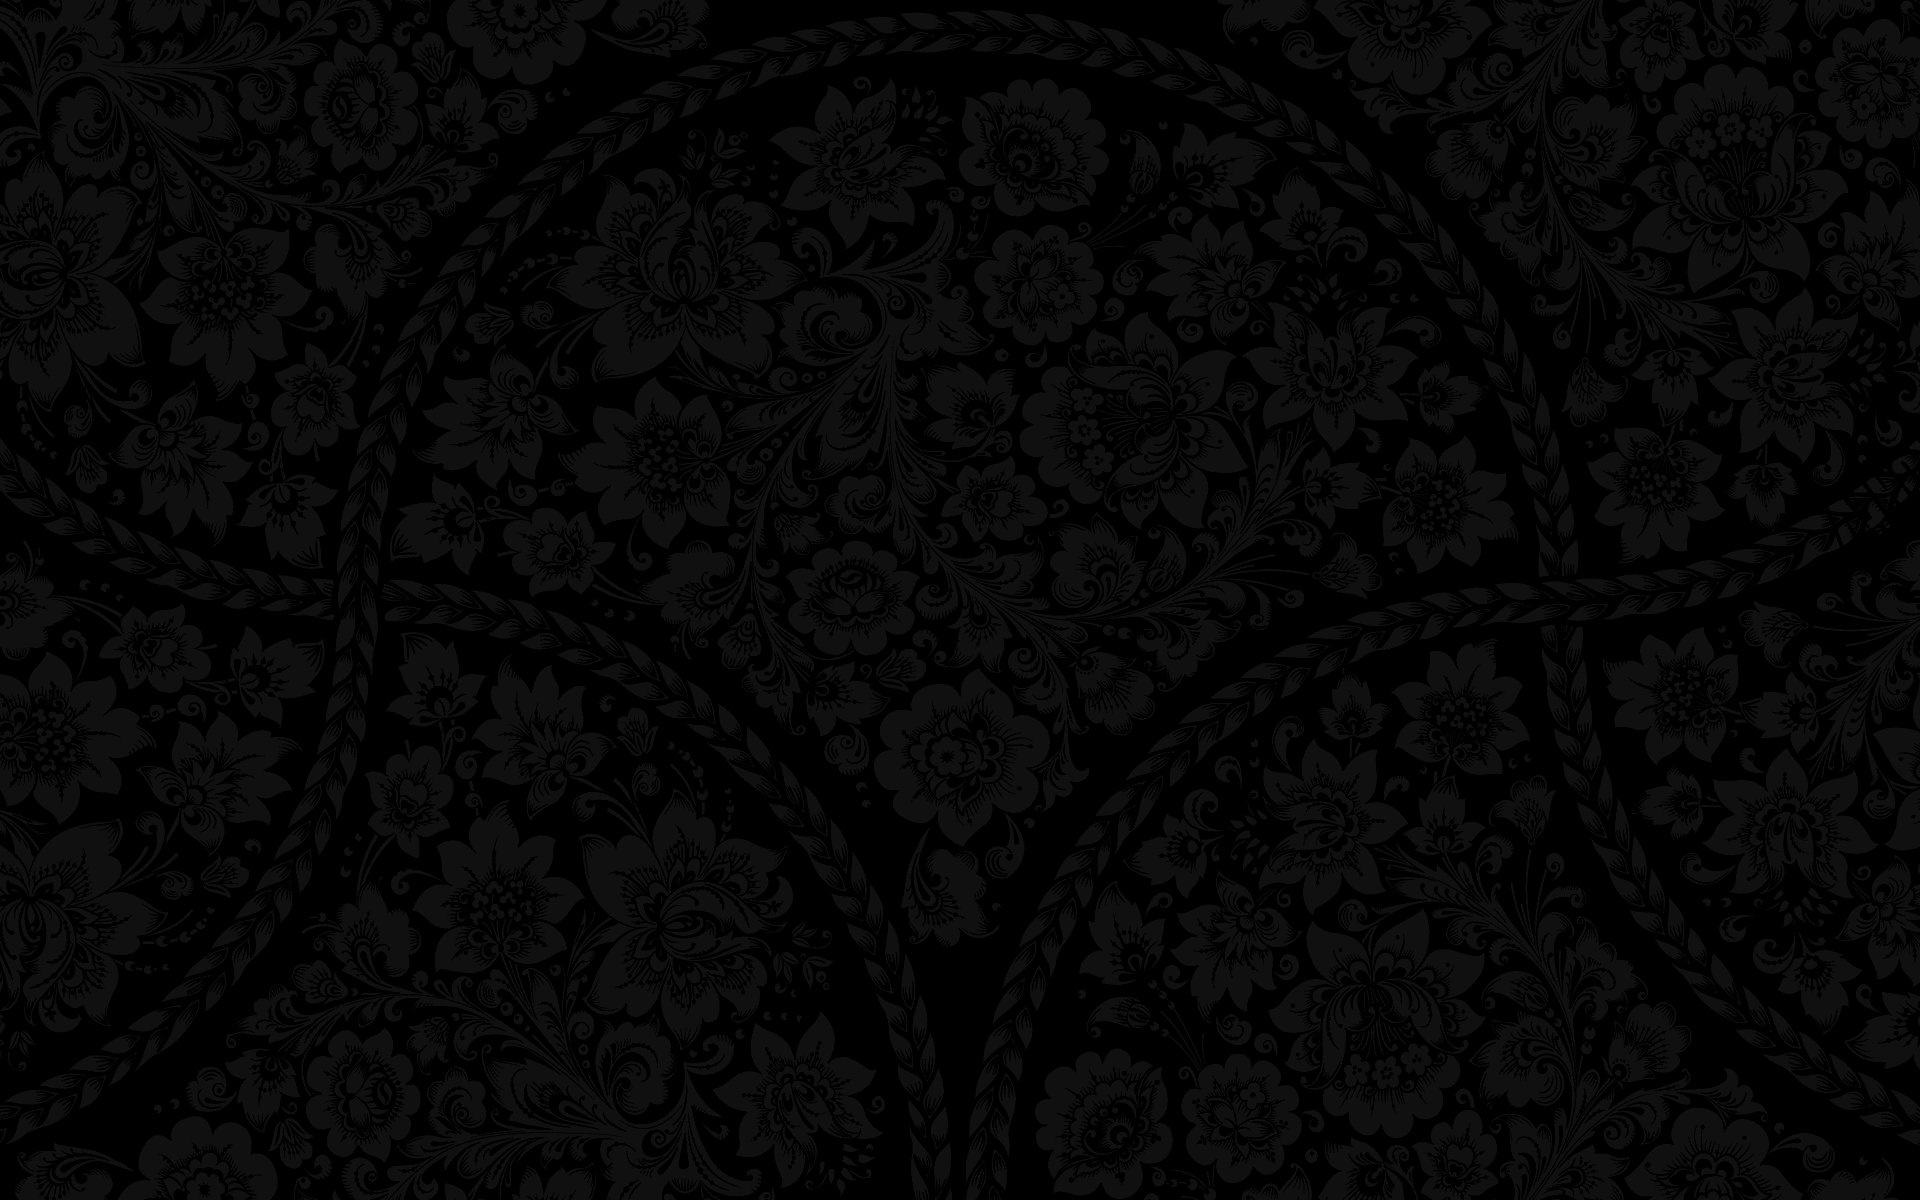 On Black Background Patterns Oldtimewallpaper Antique